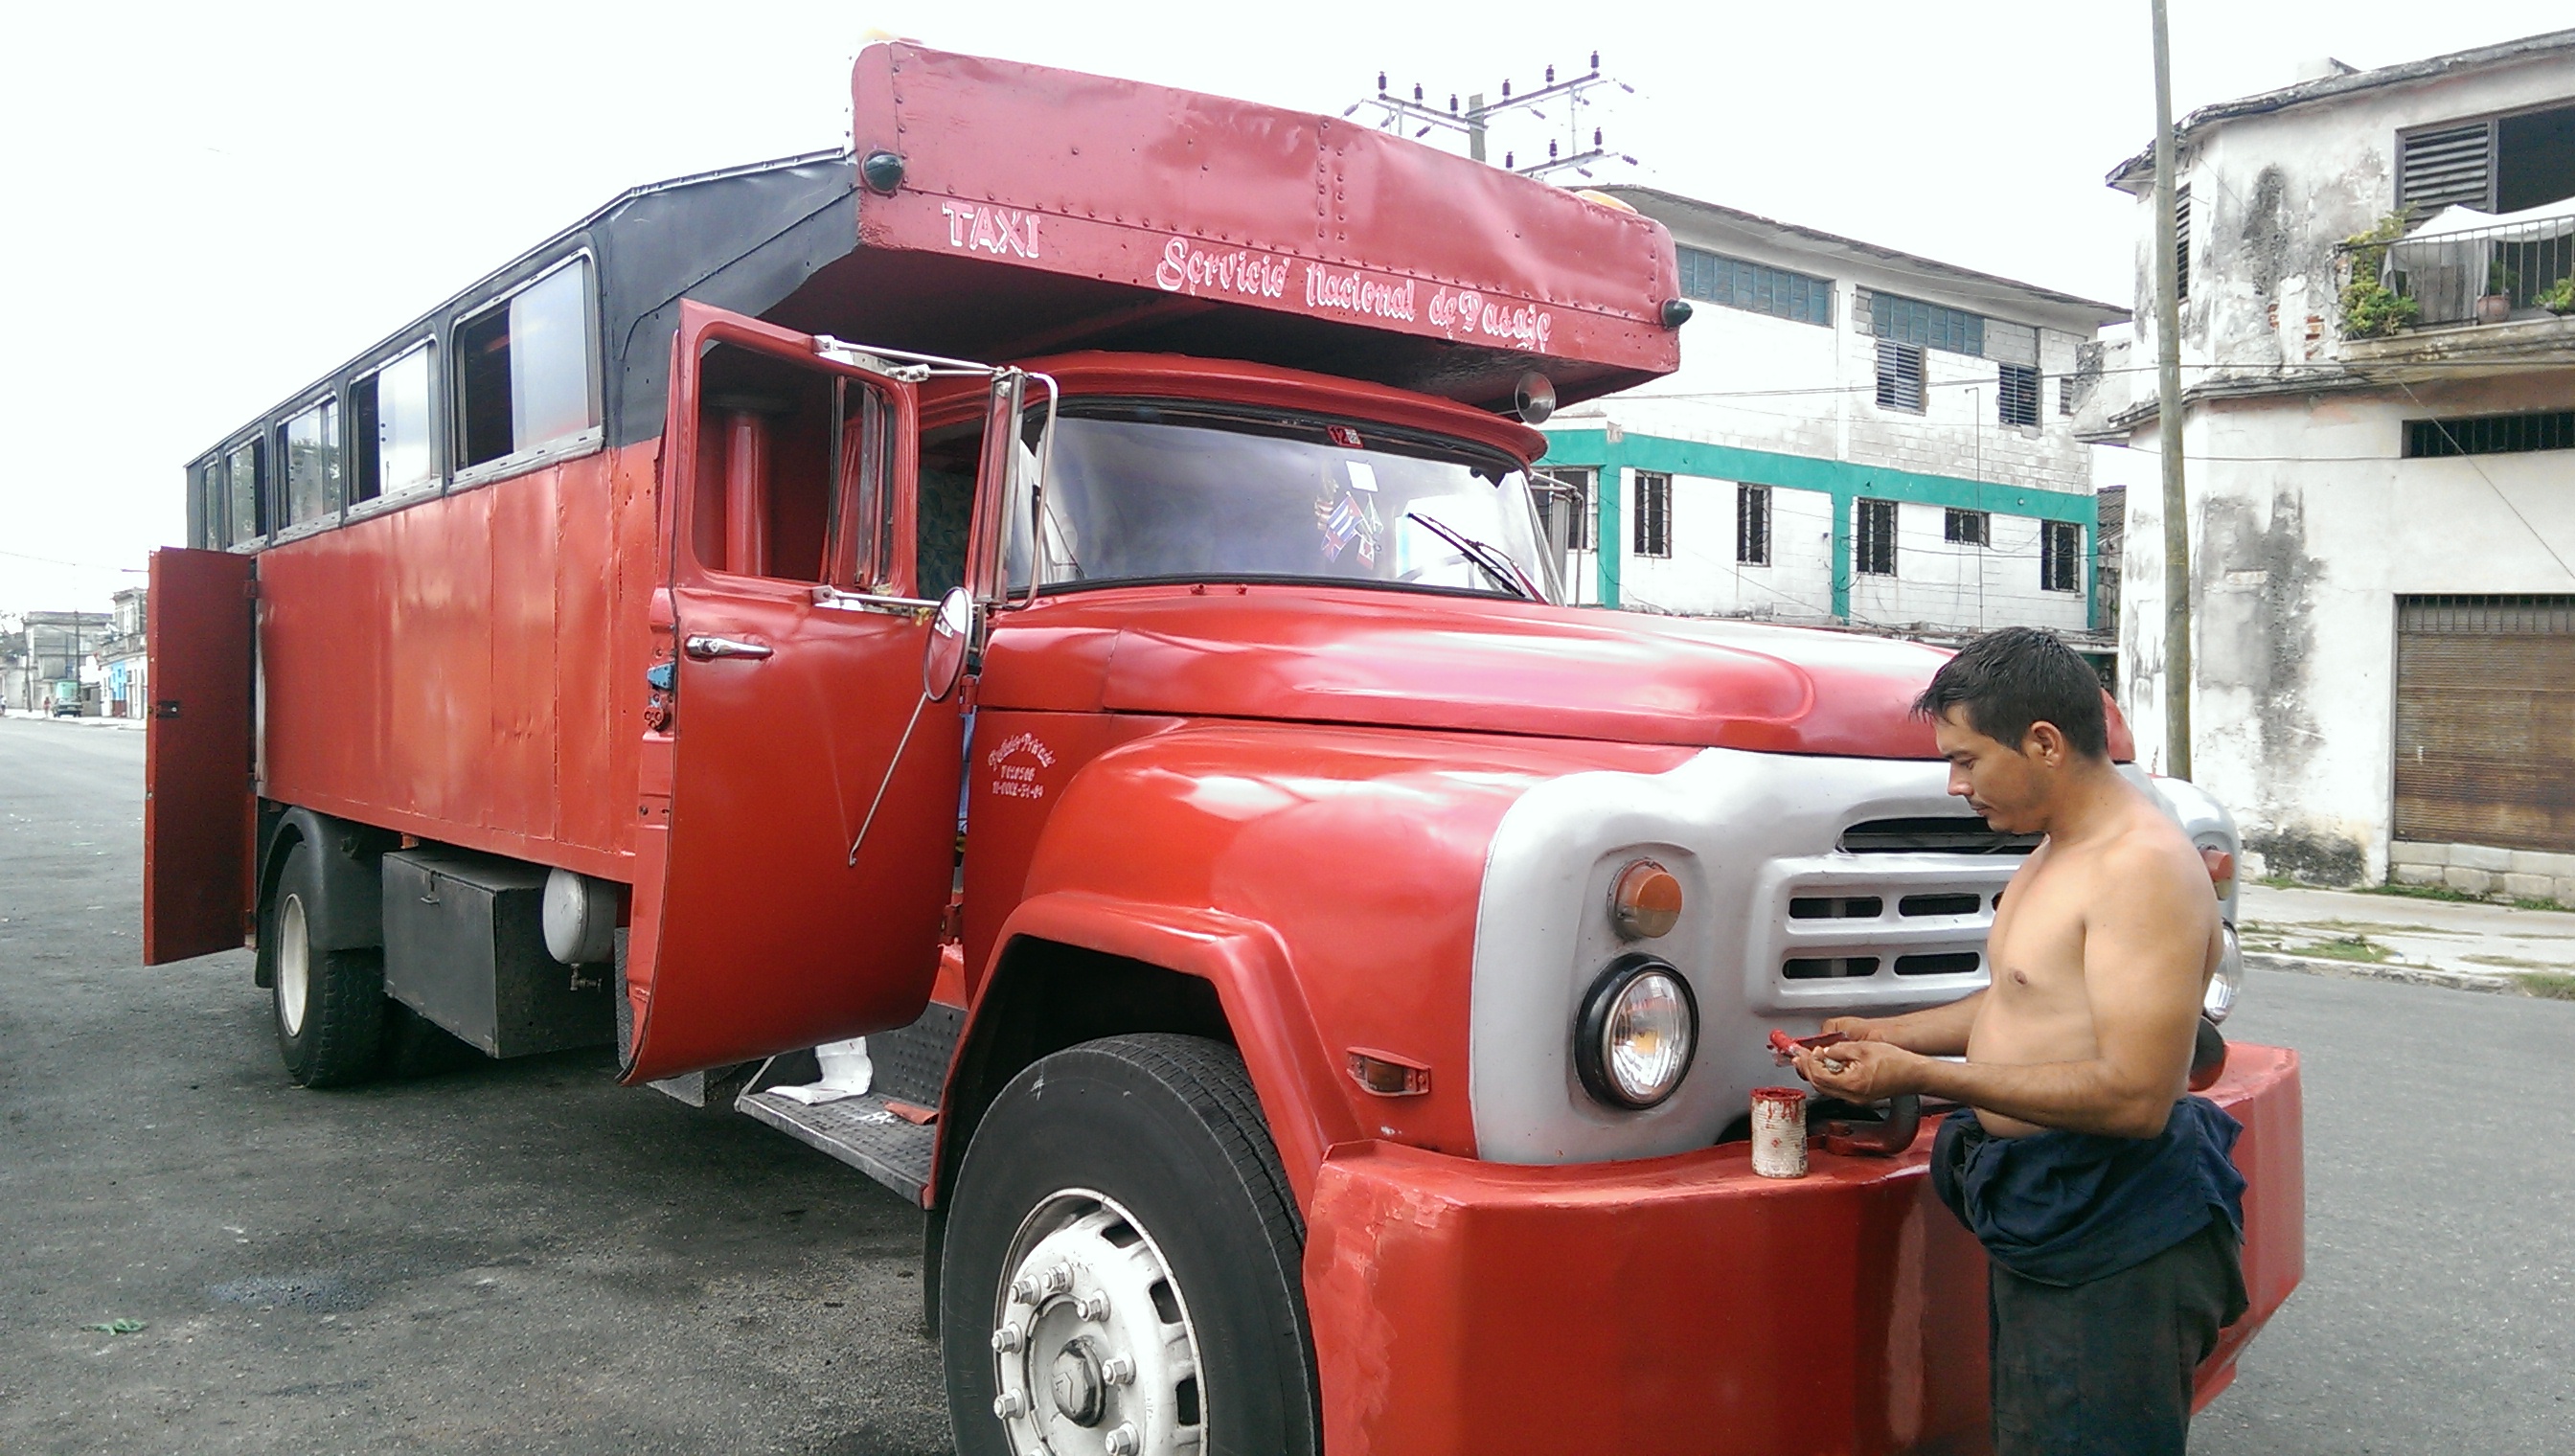 Camiones preparados para el transporte masivo interprovincial (1)